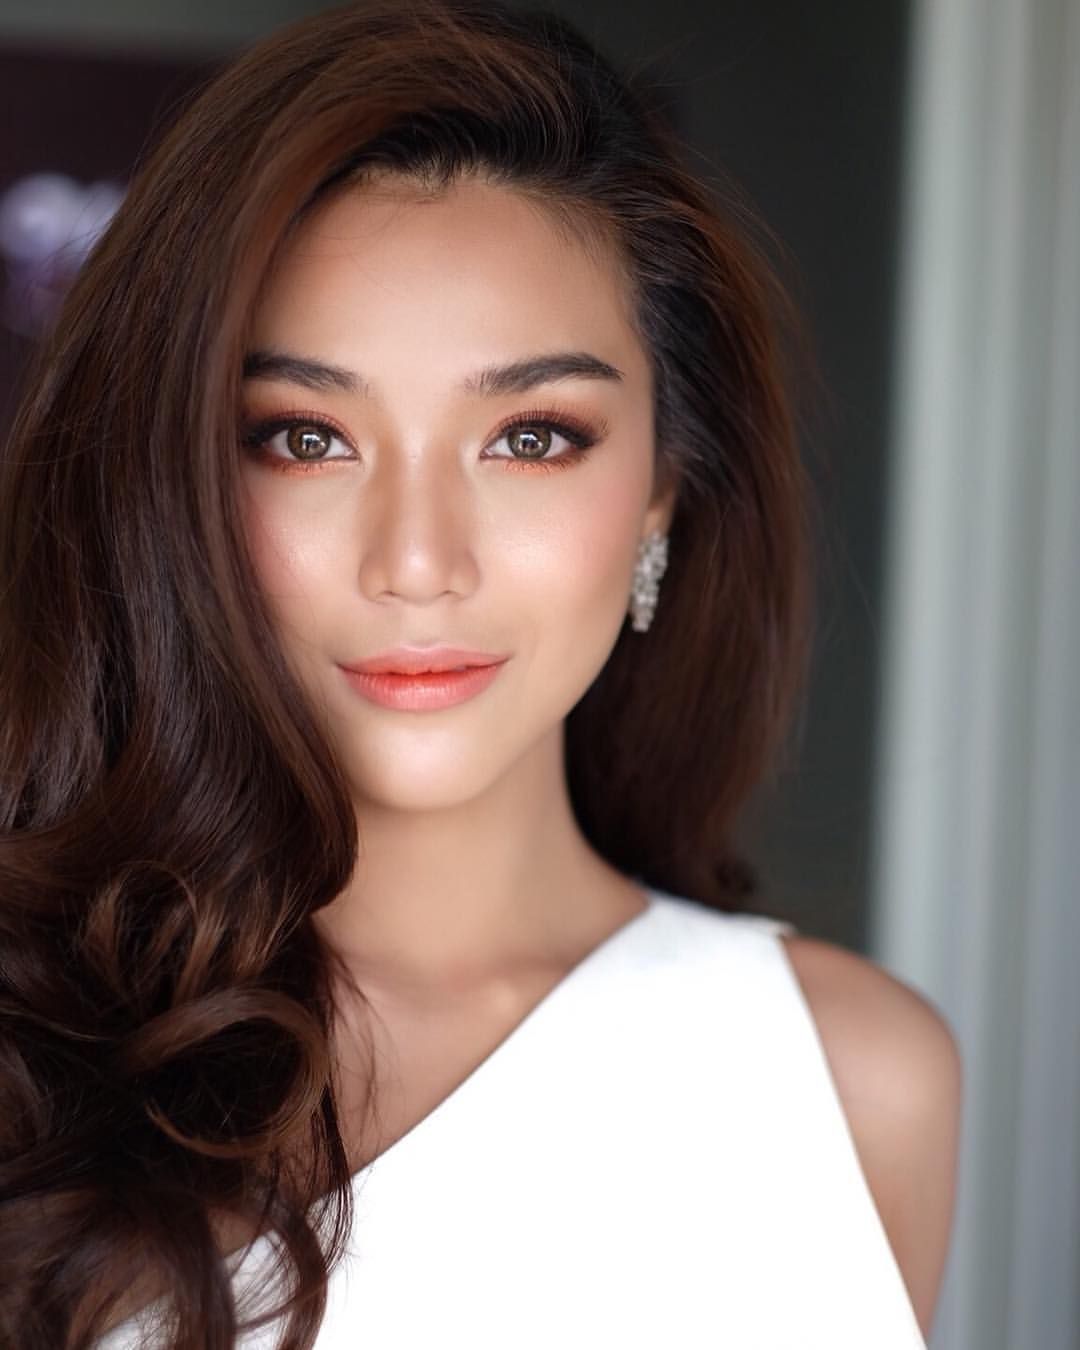 36 Look at Asian Women's Makeup to Inspire -   8 makeup Face wedding ideas